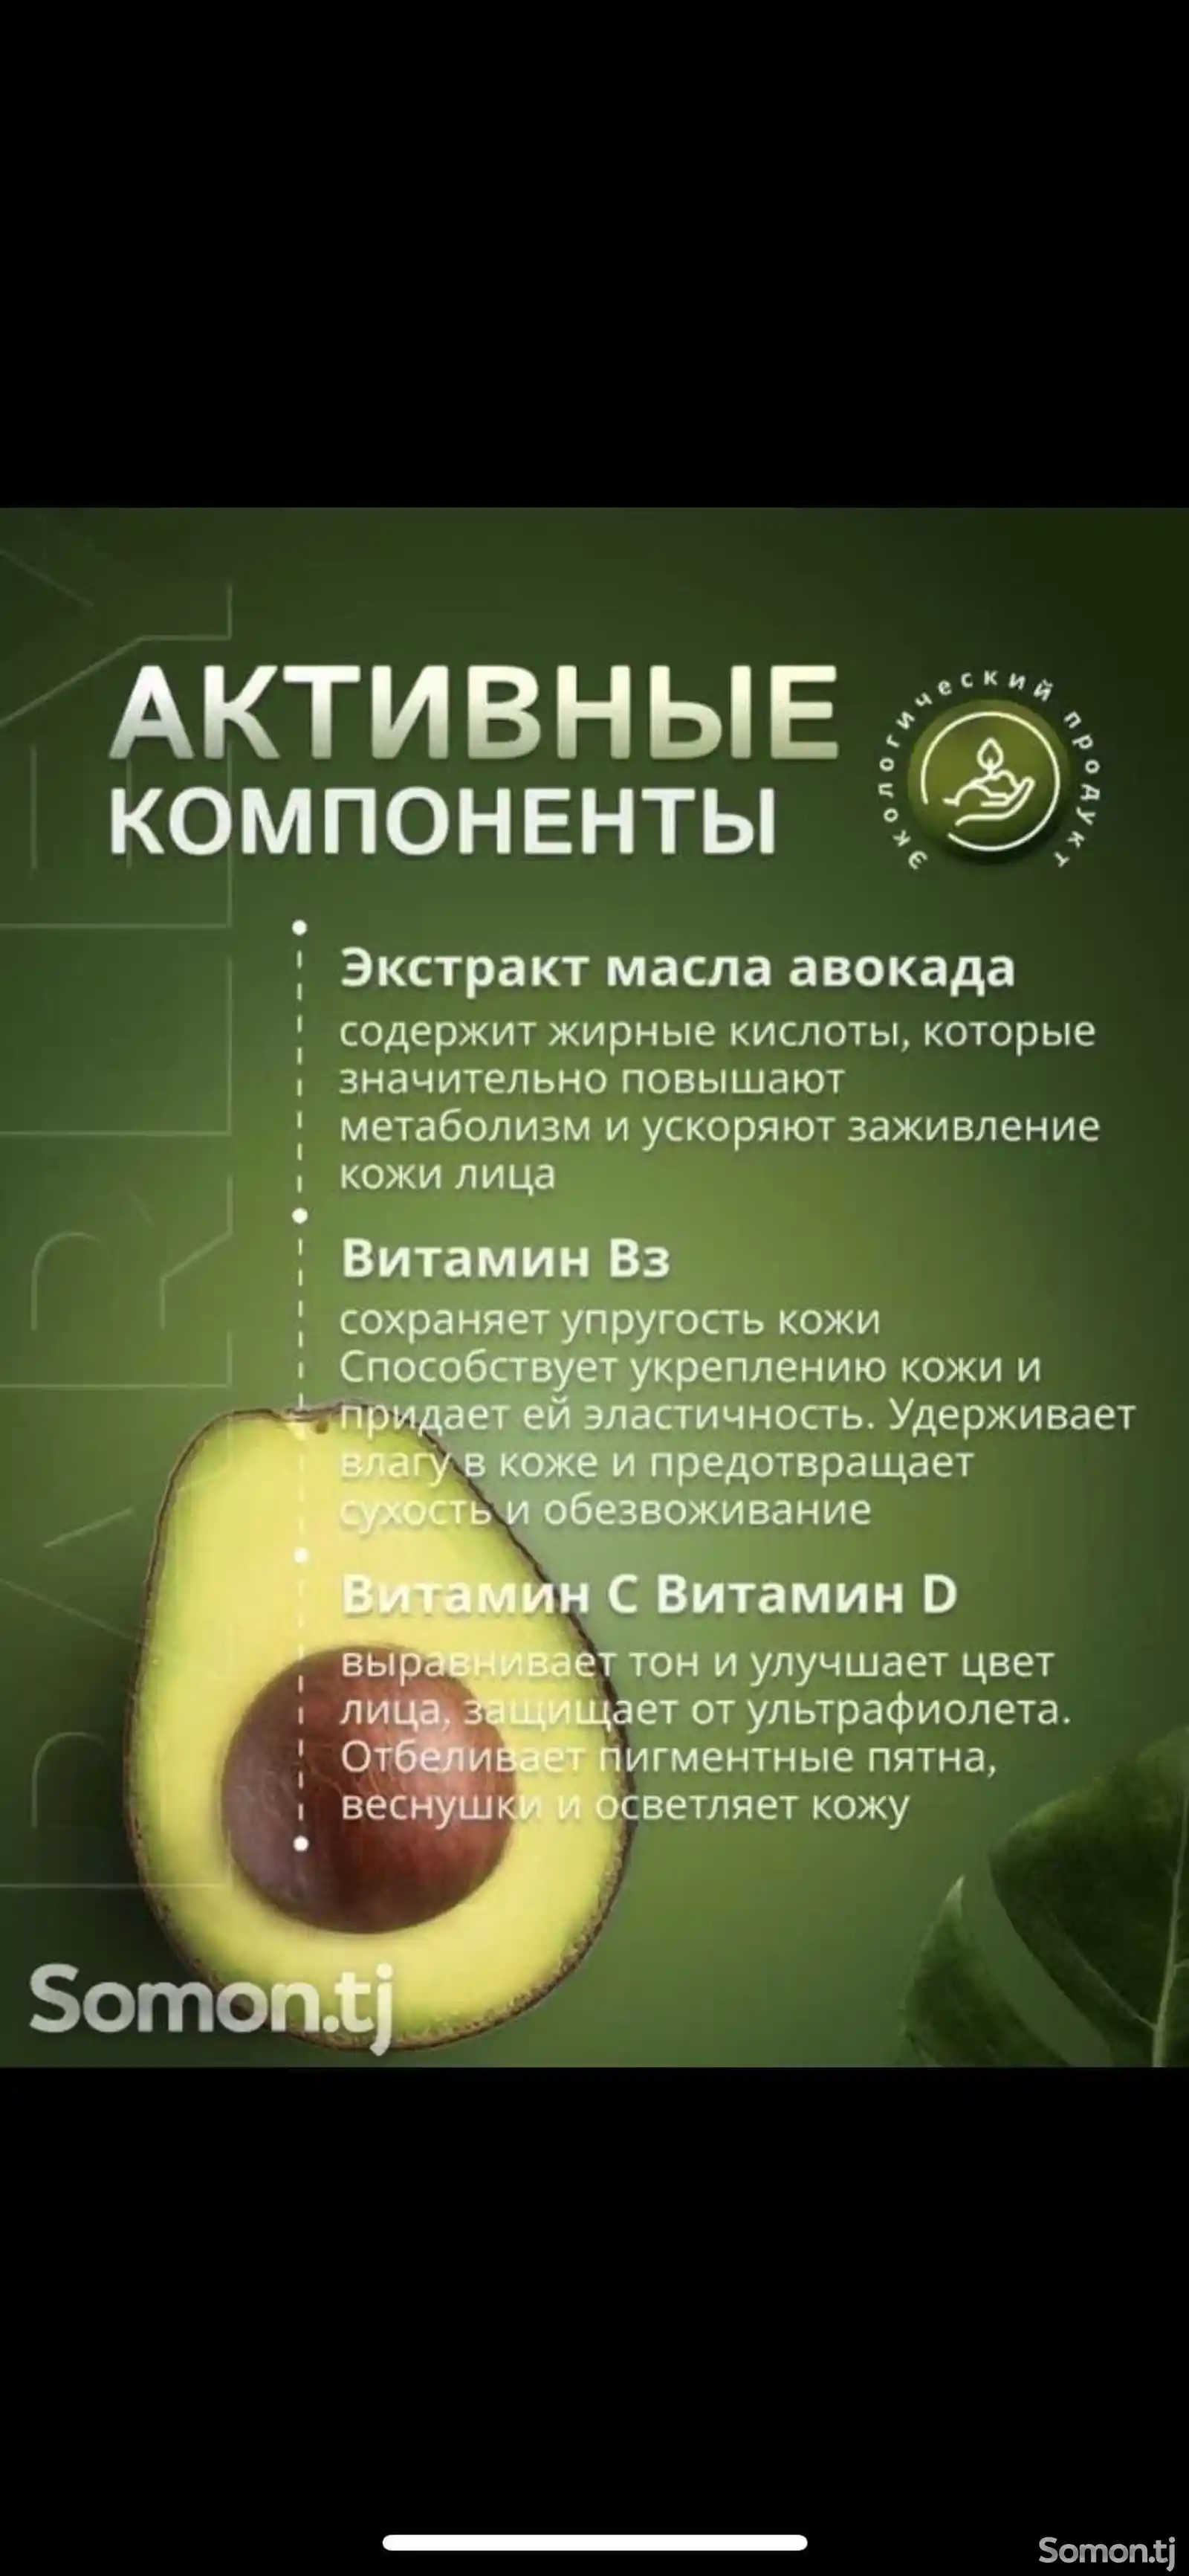 Крем Авокадо-2